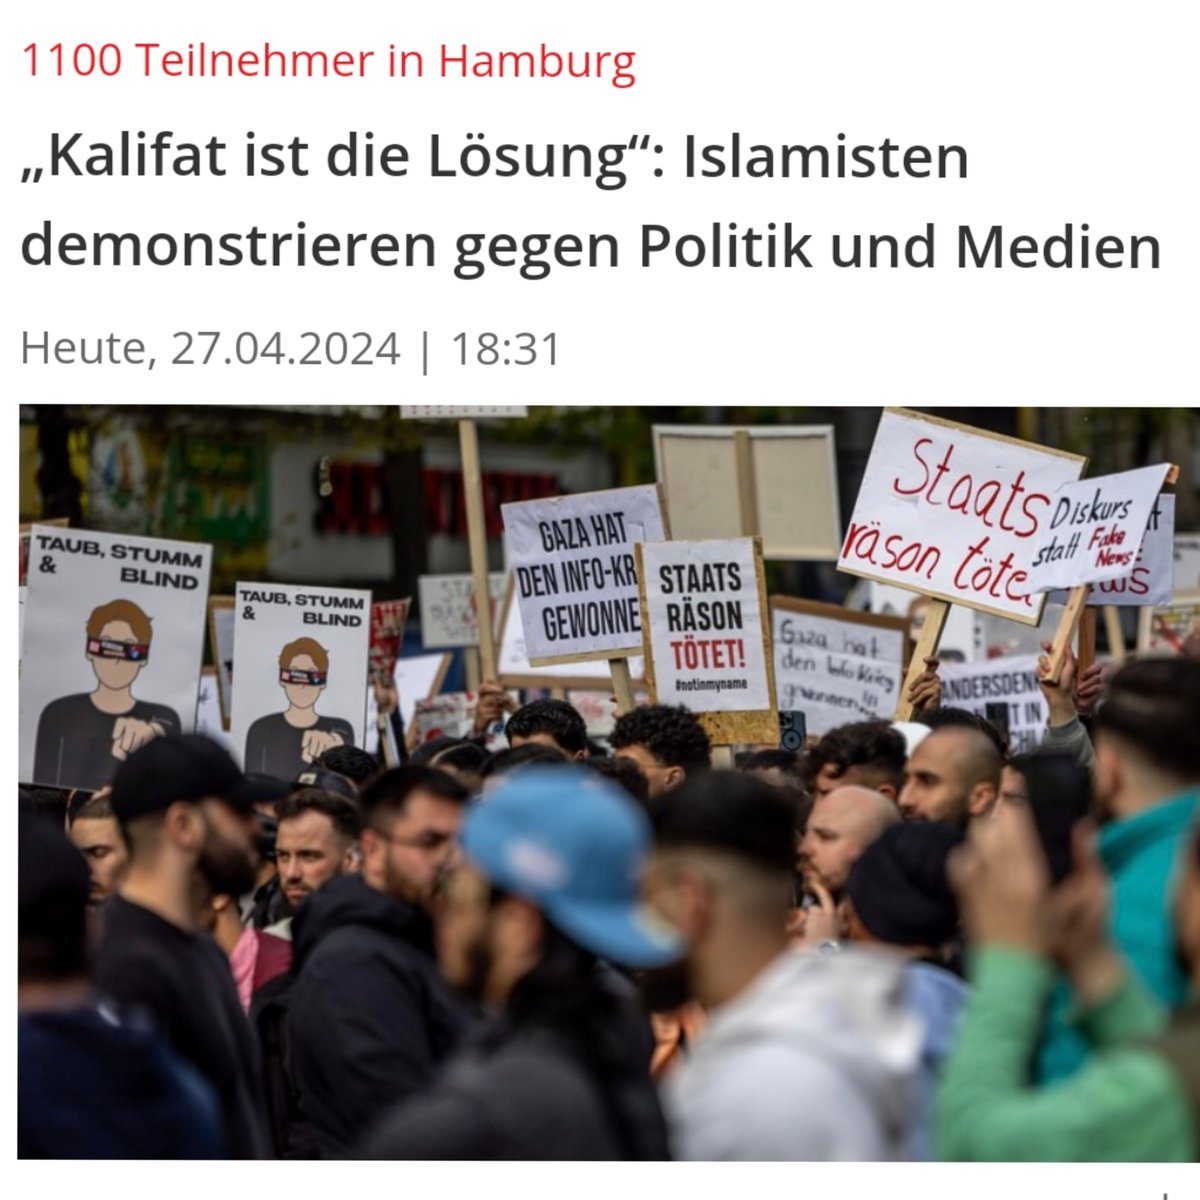 m.focus.de/panorama/welt/… Über 1000 Teilnehmer bei Islamisten-Demo in Hamburg. Allahu Akbar! Kalifat ist die Lösung? 🤡 Nein! #Remigration ist die Lösung. Punkt. #Migrationspolitik #Abschiebungen #Islam